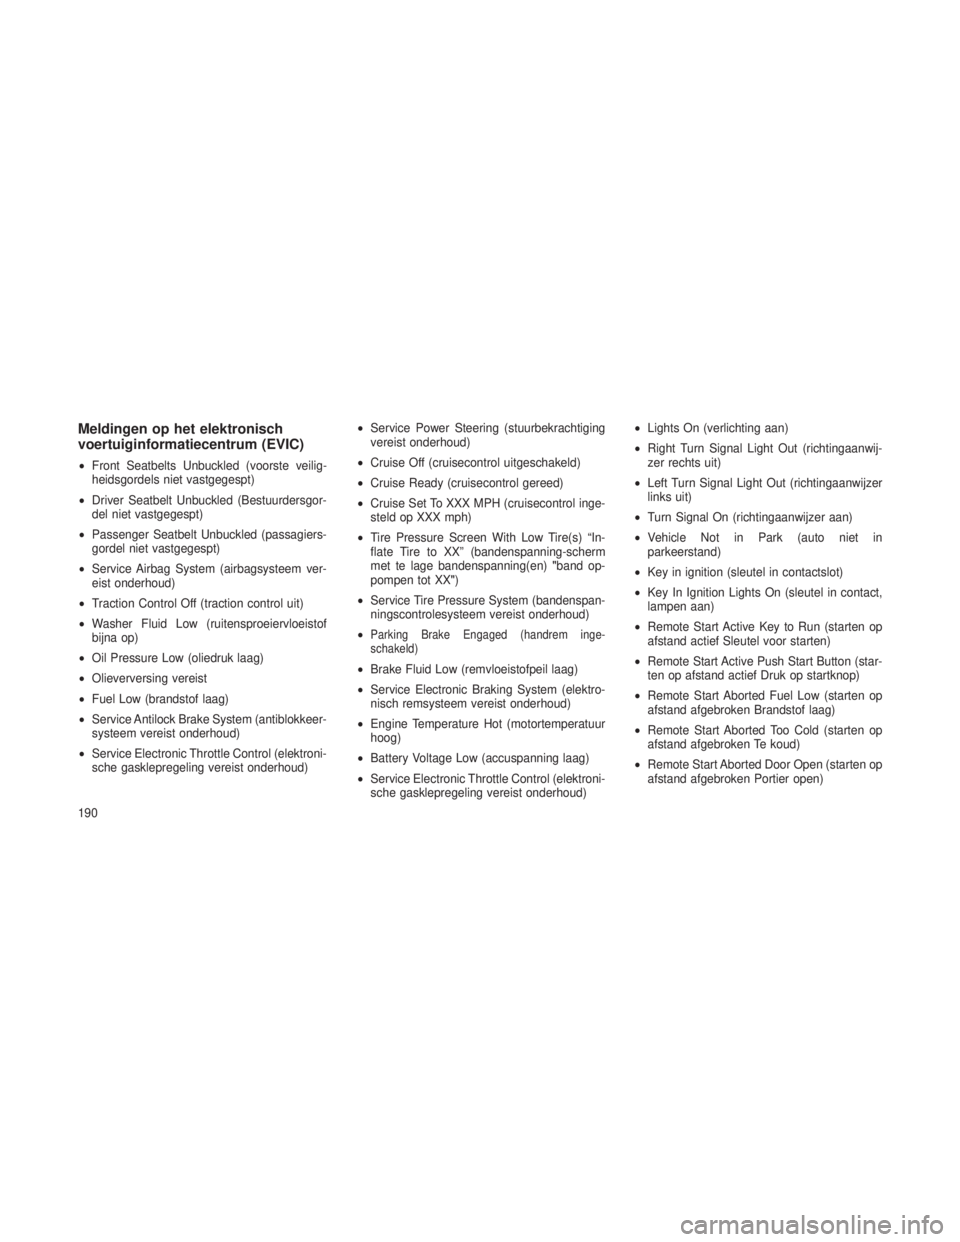 JEEP GRAND CHEROKEE 2013  Instructieboek (in Dutch) Meldingen op het elektronisch
voertuiginformatiecentrum (EVIC)
•Front Seatbelts Unbuckled (voorste veilig-
heidsgordels niet vastgegespt)
• Driver Seatbelt Unbuckled (Bestuurdersgor-
del niet vast